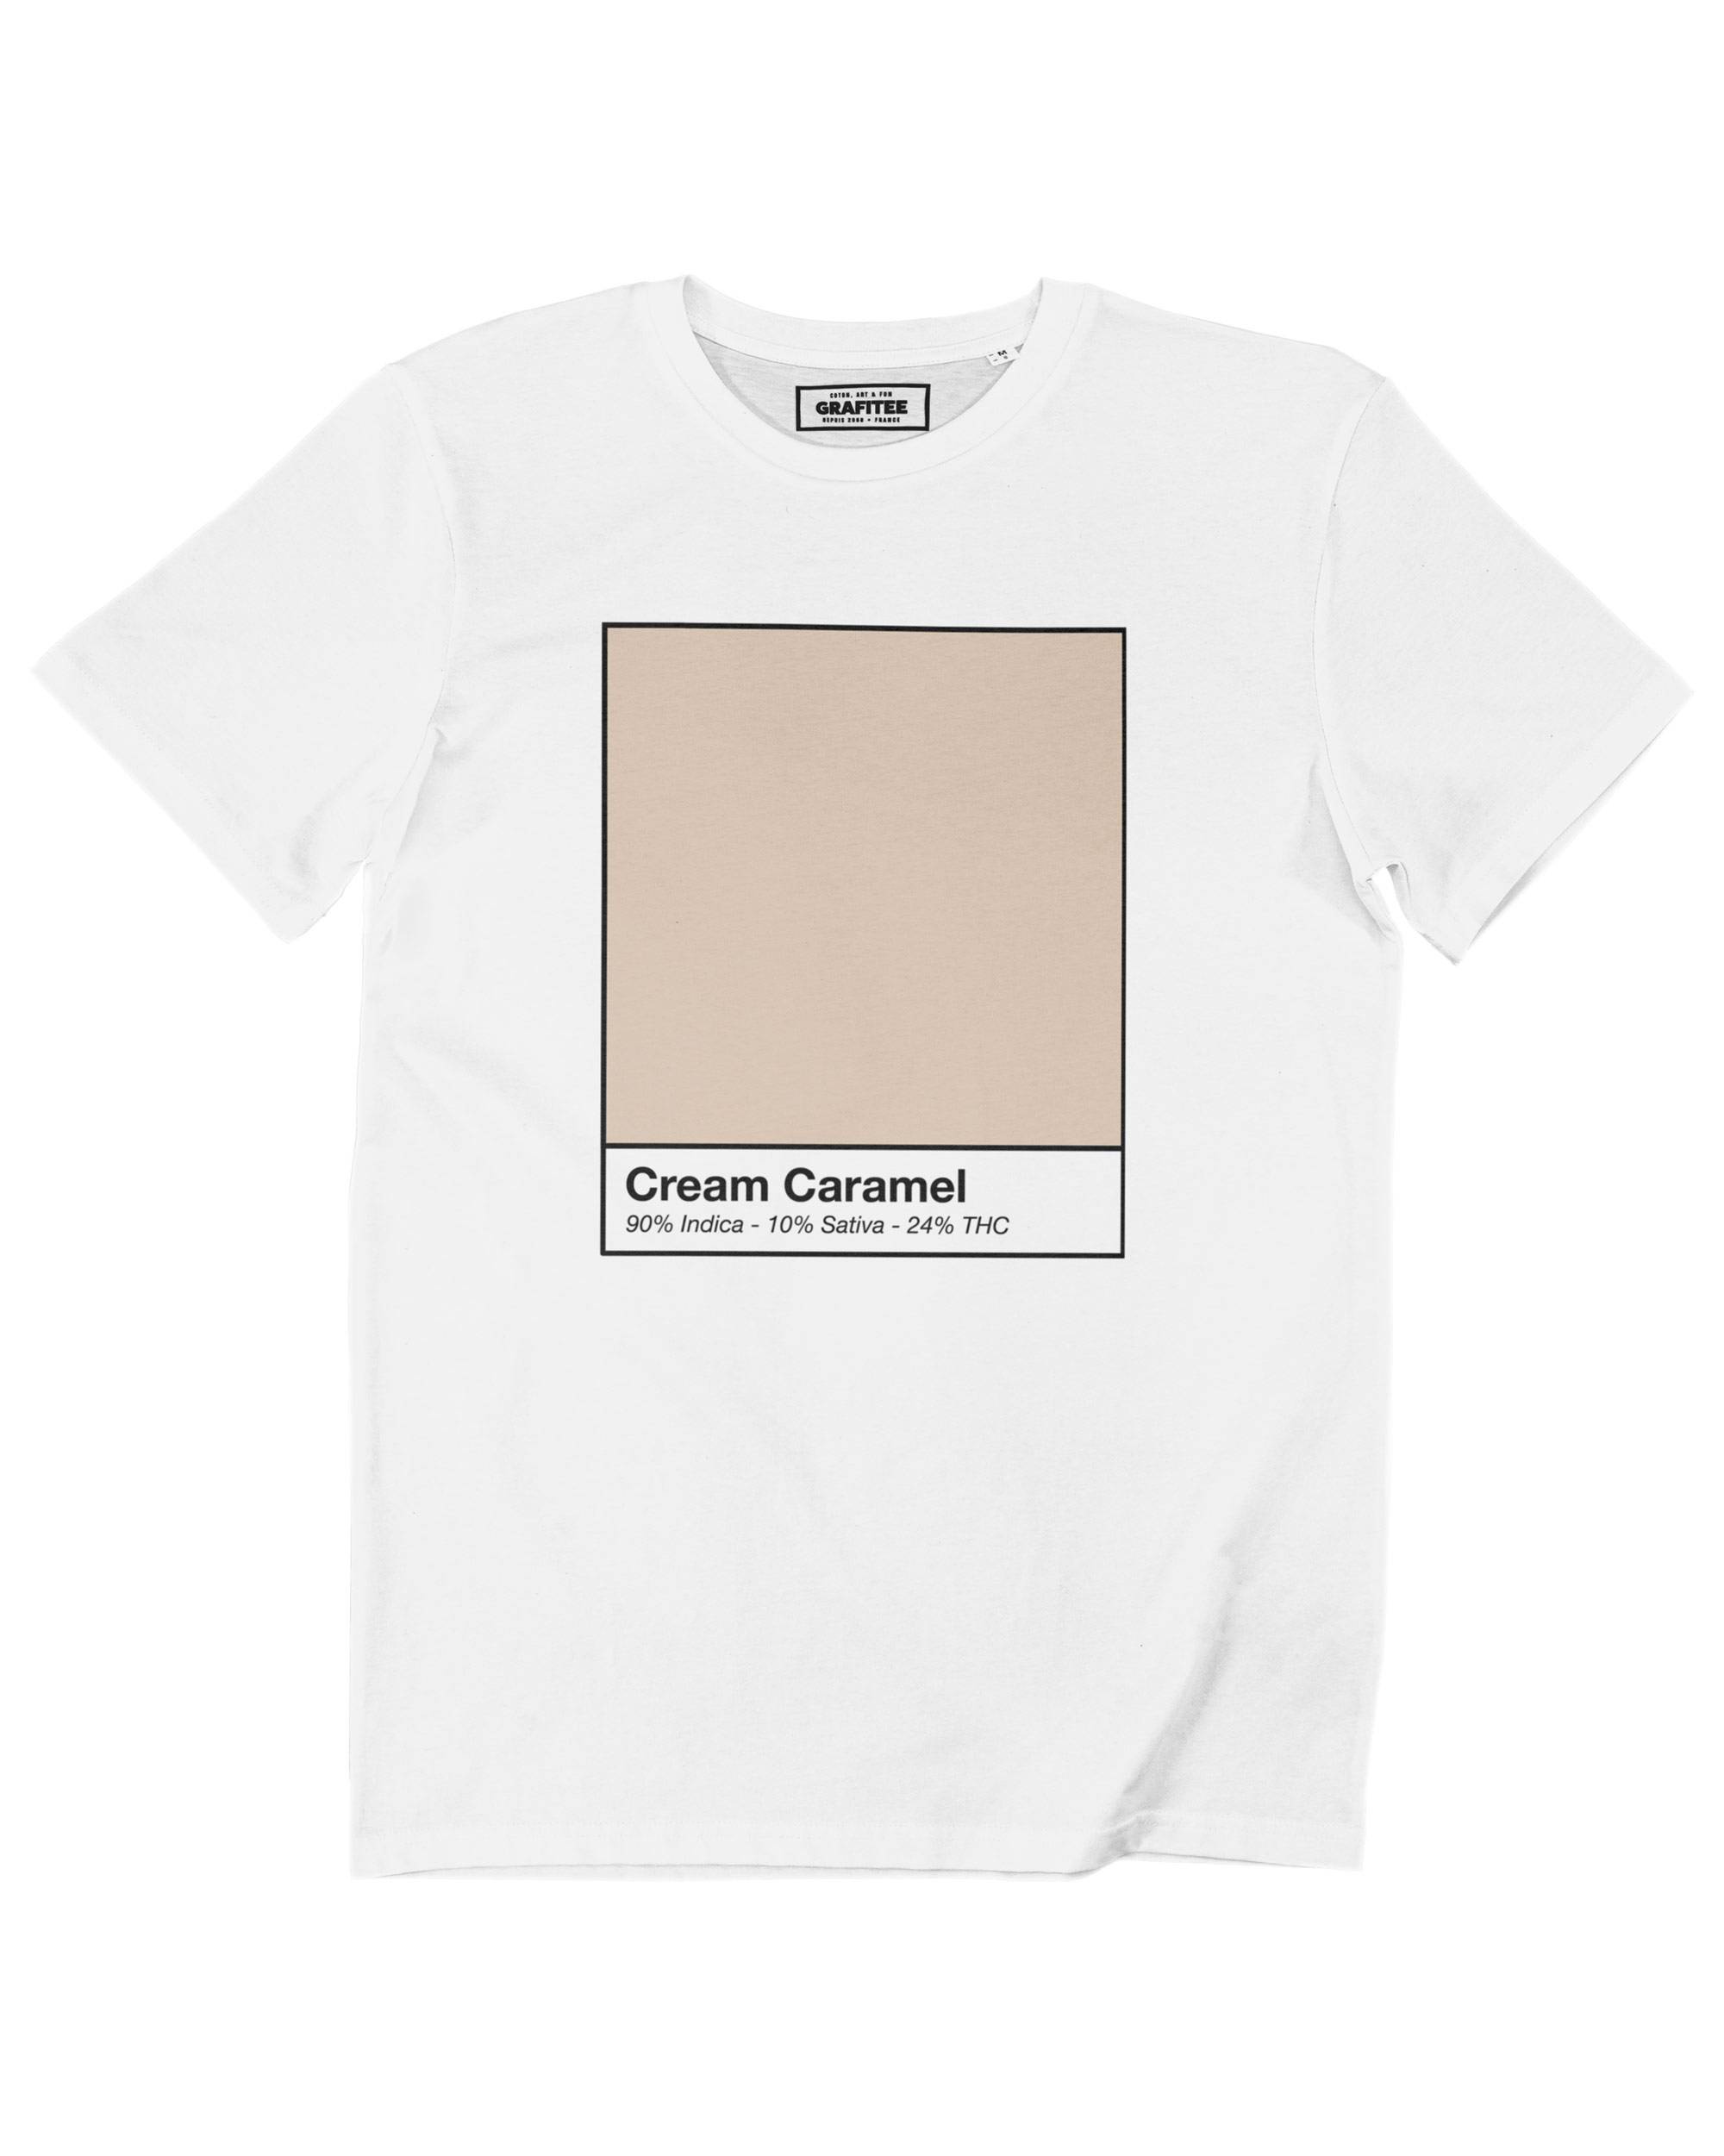 T-shirt Cream Caramel Kush Grafitee